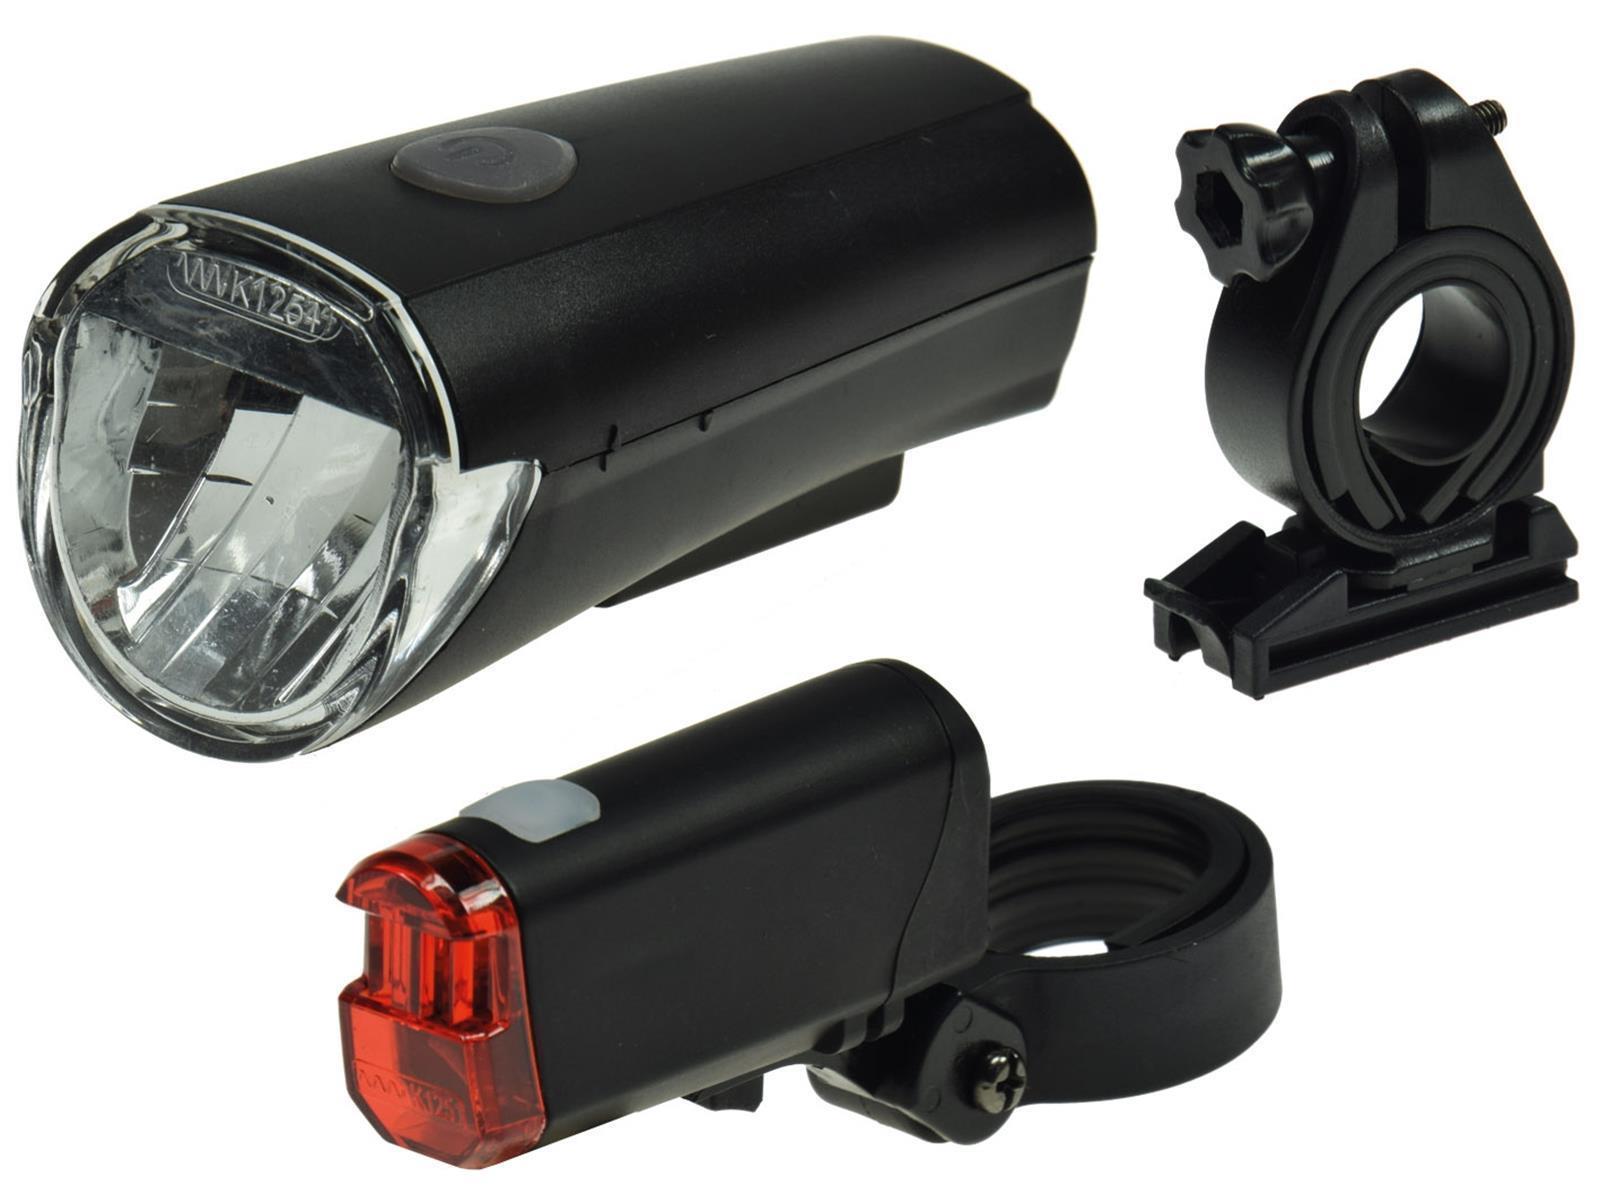 Fahrrad LED-Beleuchtungsset "CFL 30"30Lux, StVZO zugelassen, Batteriebetrieb